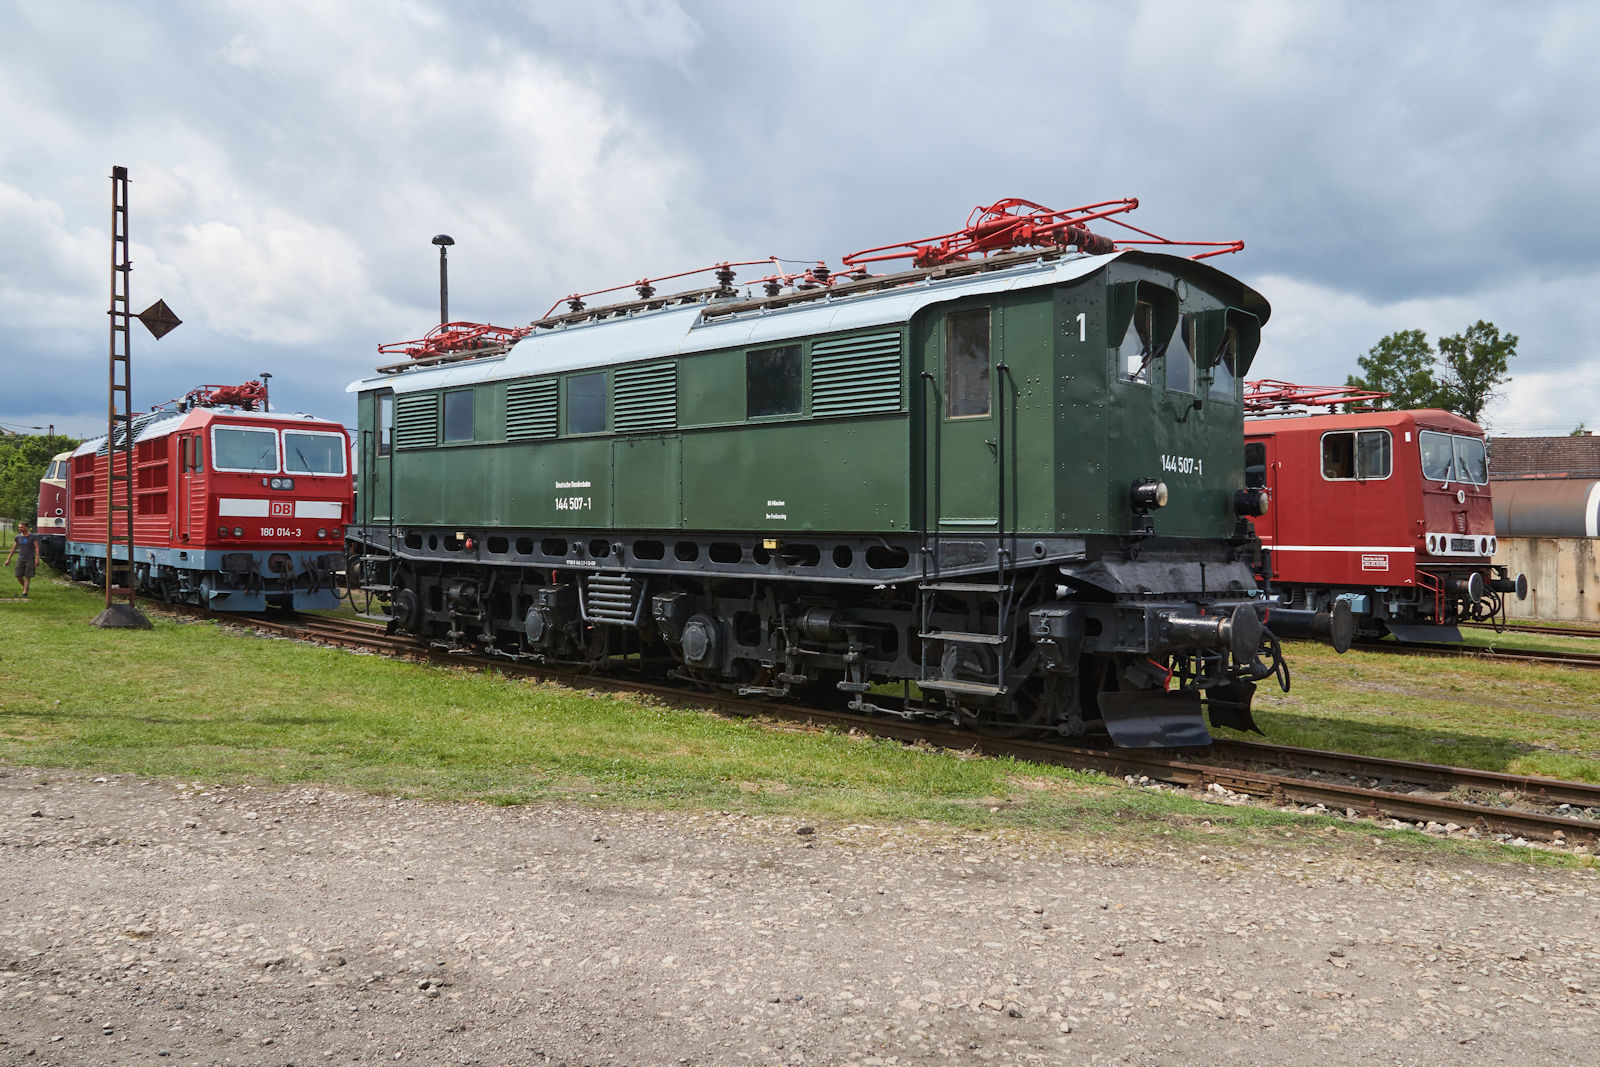 3 Generationen von Elektroloks standen am 01.08.2021 auf dem Gelände des Thüringer Eisenbahnvereins. Mit 144 507 konnte der TEV einen Exoten erhalten, welcher nur in wenigen Stück in den 1930er Jahren gebaut wurde. Die 1970er Jahre werden durch 250 250 vertreten und 180 014 wurde Anfang der 1990er Jahre geliefert.